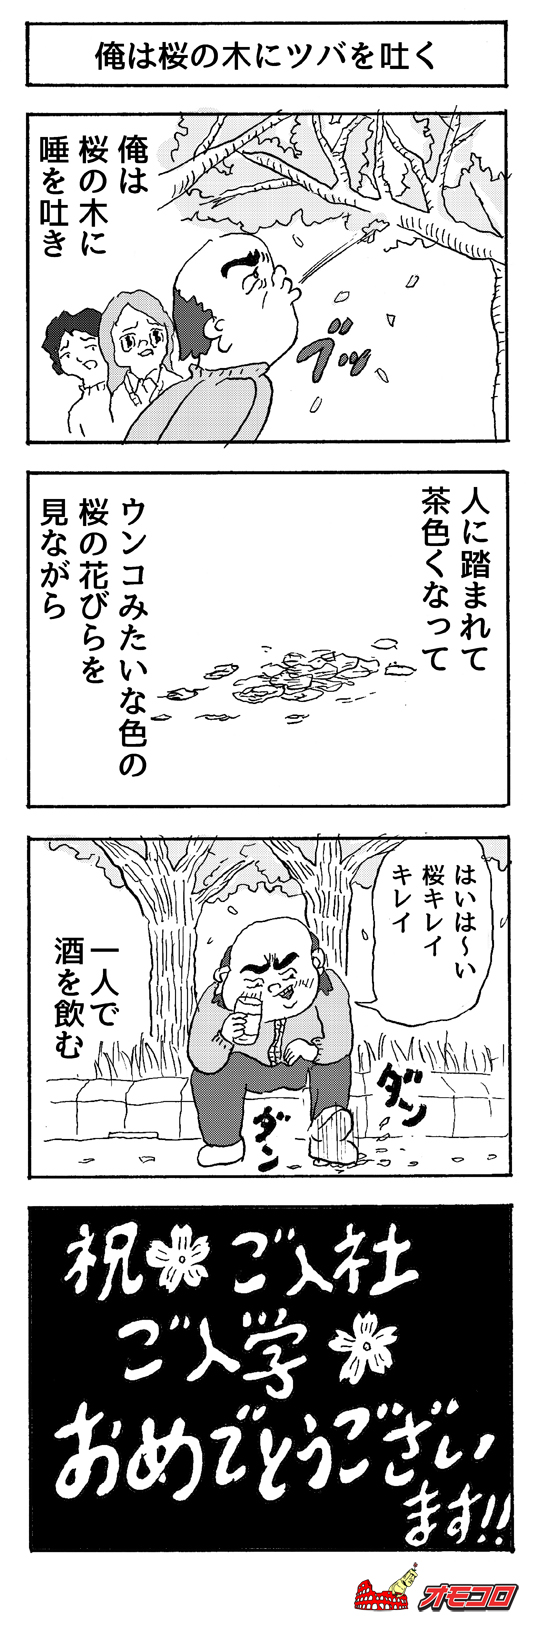 【4コマ漫画】俺は桜の木に唾を吐く